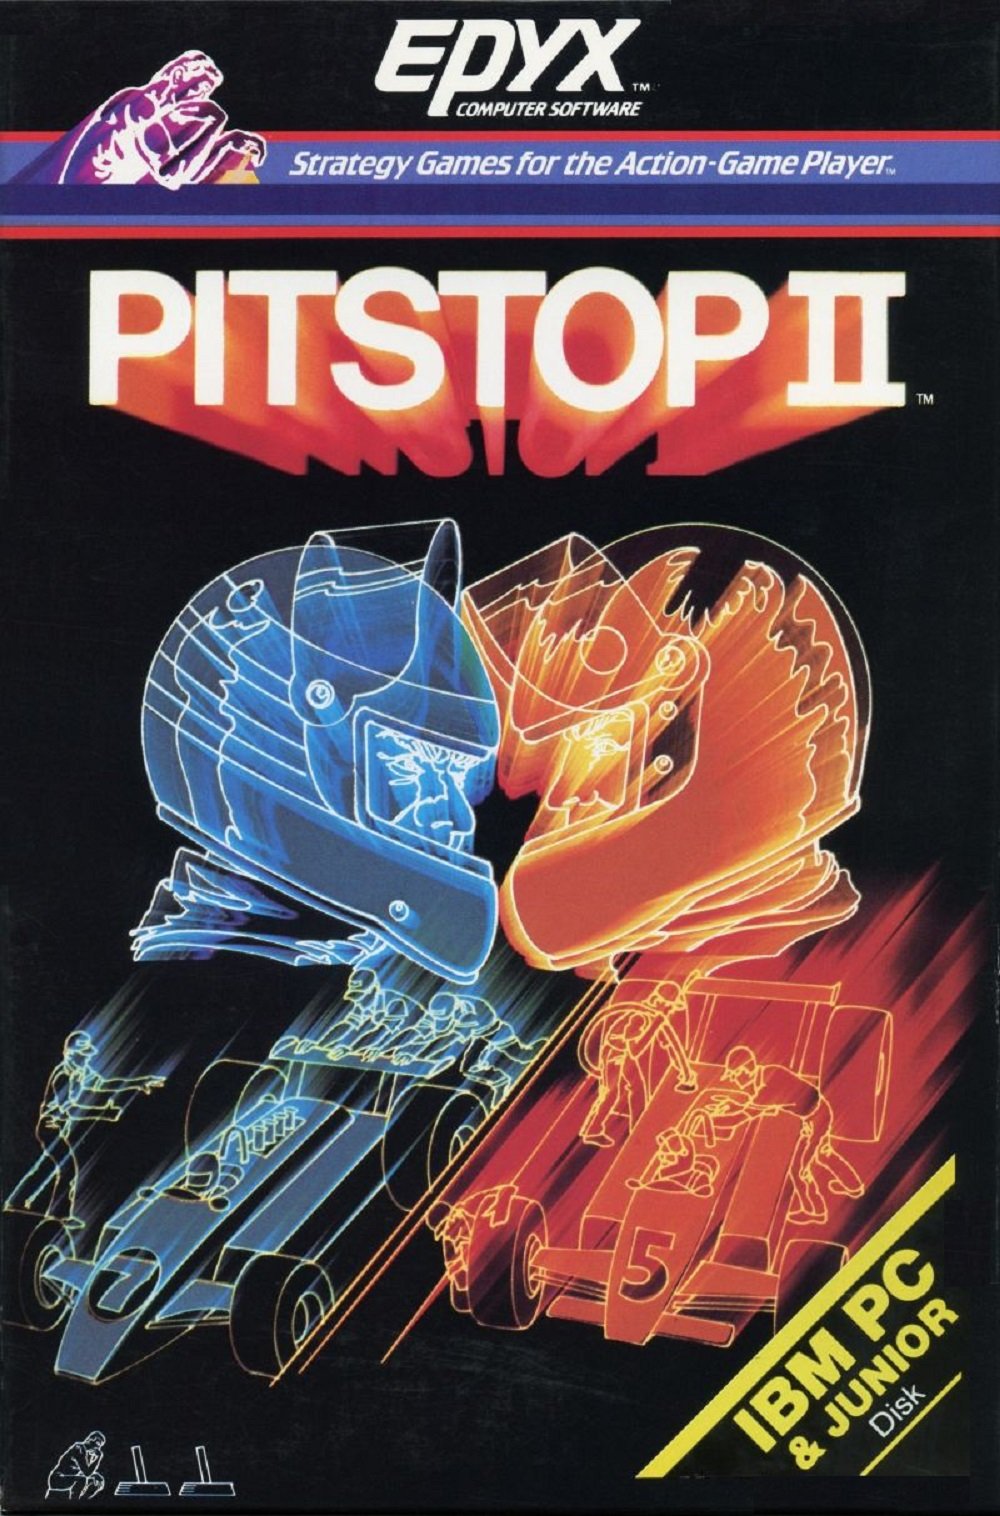 Image of Pitstop II